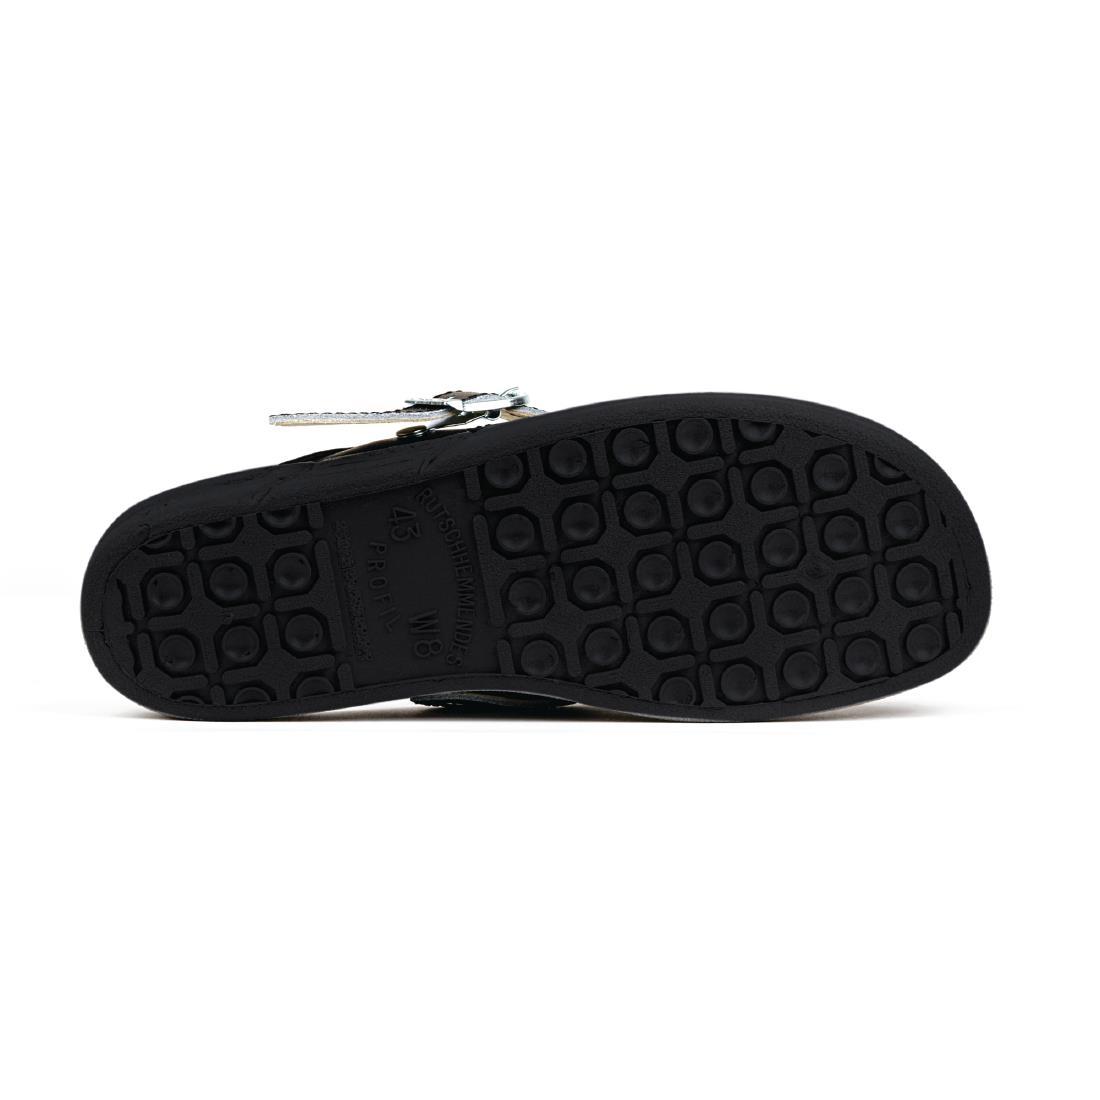 Abeba Microfibre Clogs Black Size 38 - A898-38  - 4